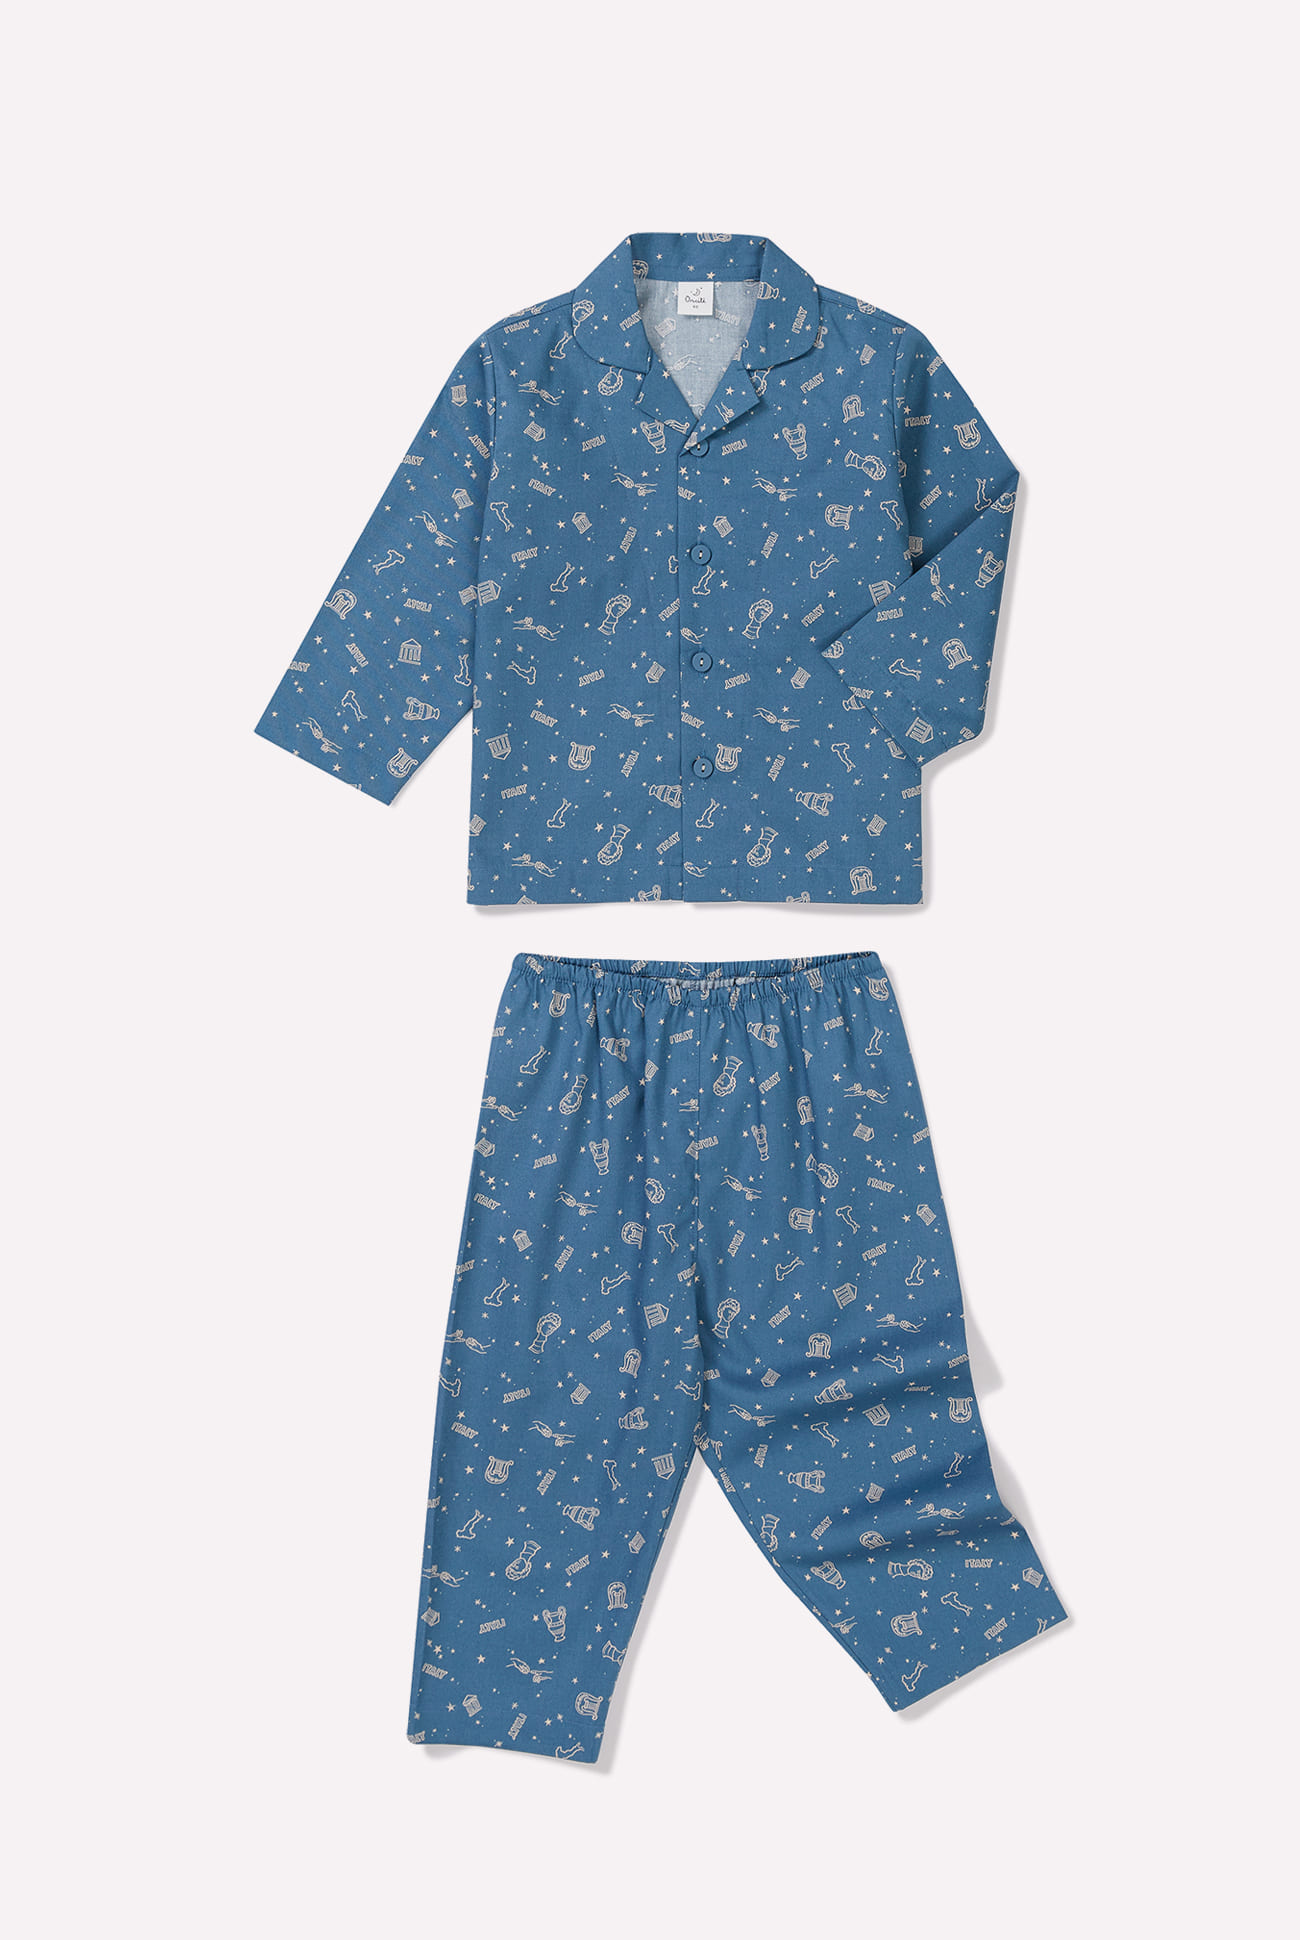 Kids Pajamas, Cute Pajamas, Men Pajamas, Women Pajamas, Family Look Pajamas, Boys Pajamas, Girls Pajamas